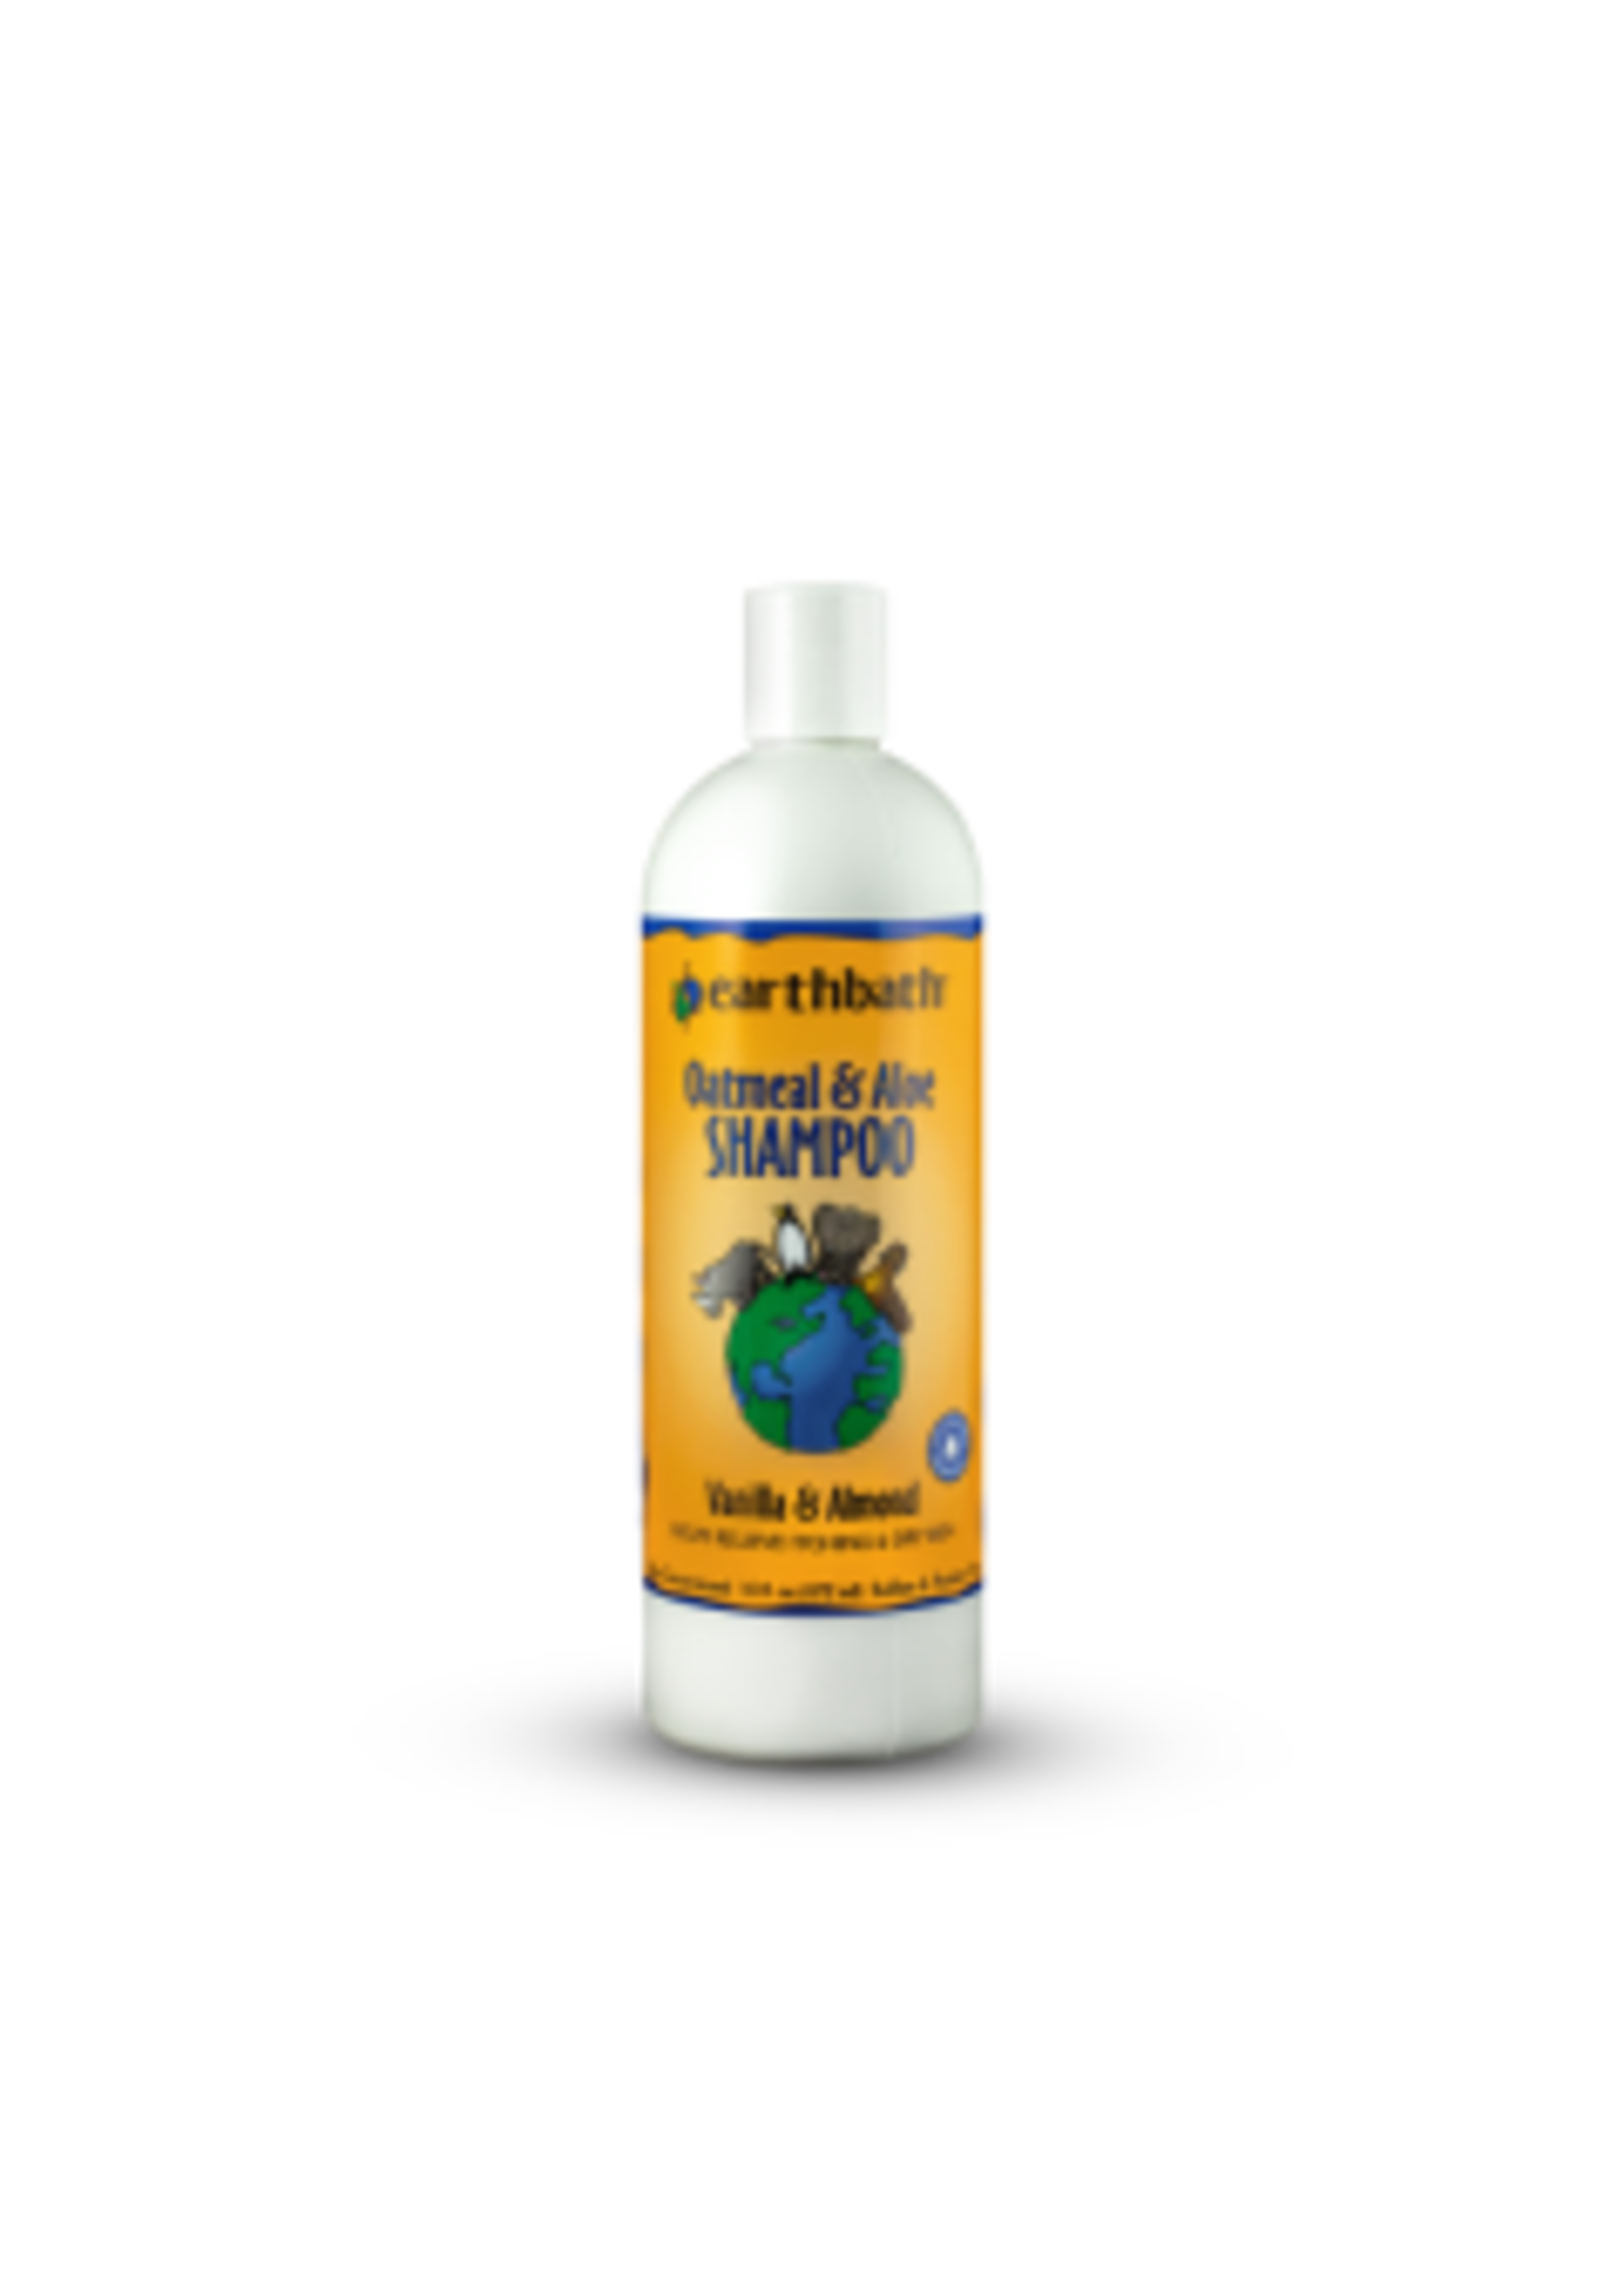 Earthbath Earthbath - Oatmeal & Aloe Shampoo Vanilla & Almond 16 oz